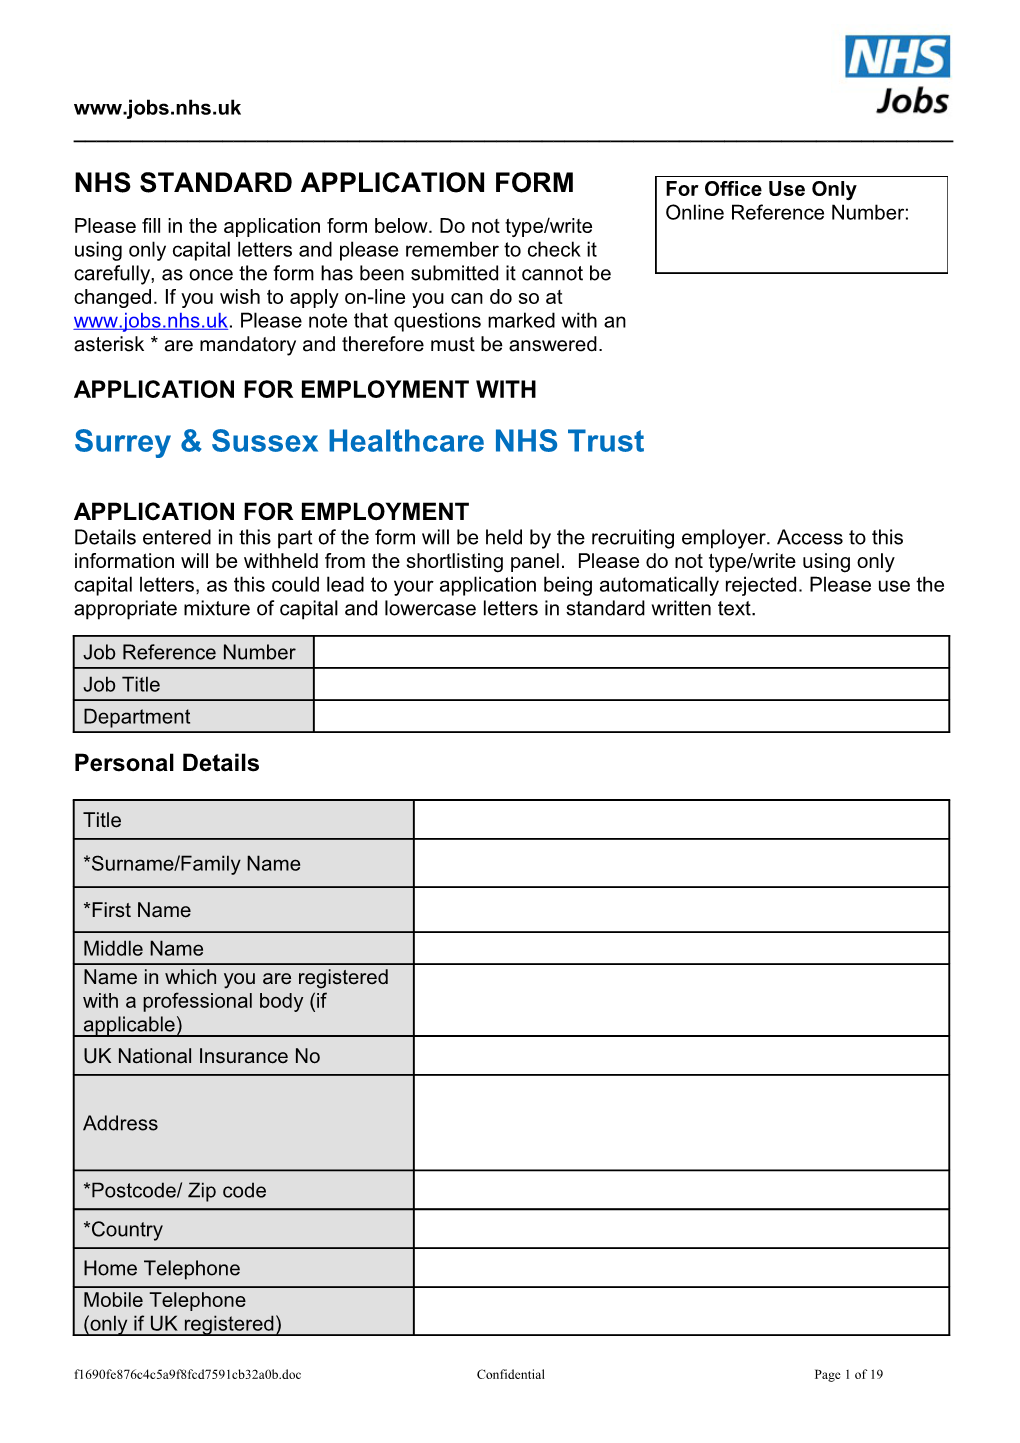 NHS Standard Application Form s8